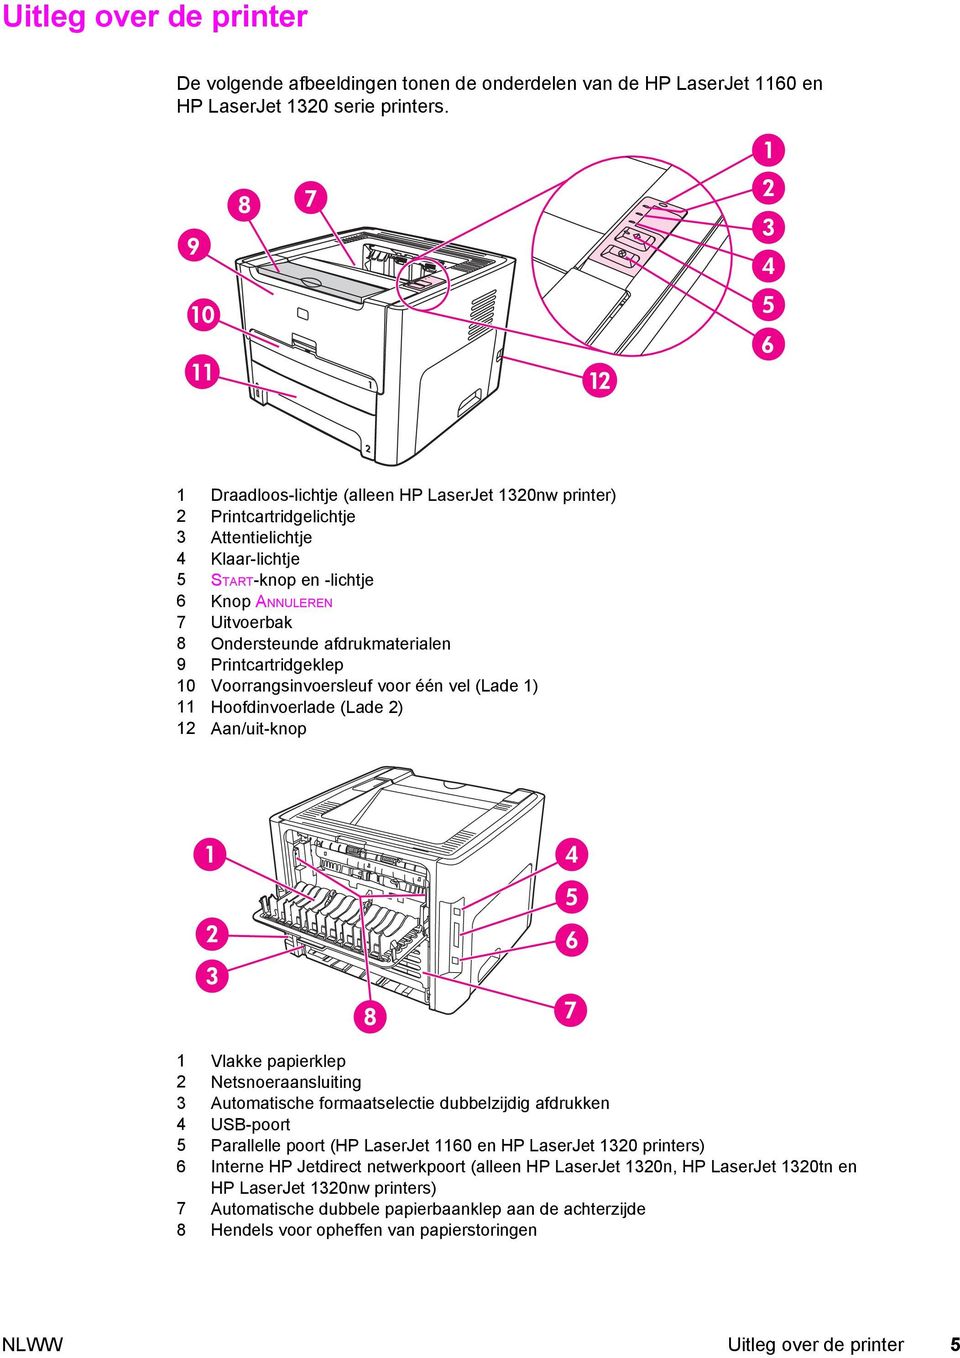 afdrukmaterialen 9 Printcartridgeklep 10 Voorrangsinvoersleuf voor één vel (Lade 1) 11 Hoofdinvoerlade (Lade 2) 12 Aan/uit-knop 1 Vlakke papierklep 2 Netsnoeraansluiting 3 Automatische